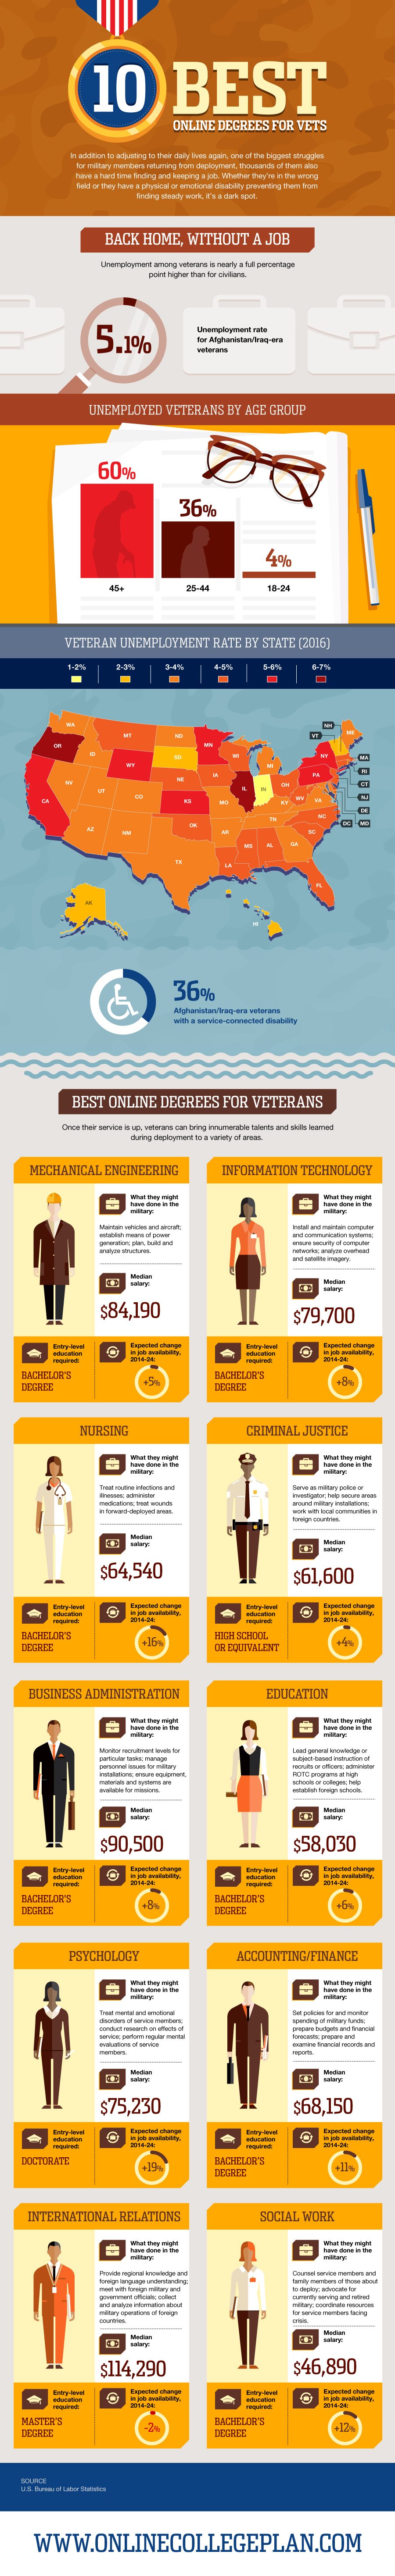 Degrees for Vets - best online college for veterans